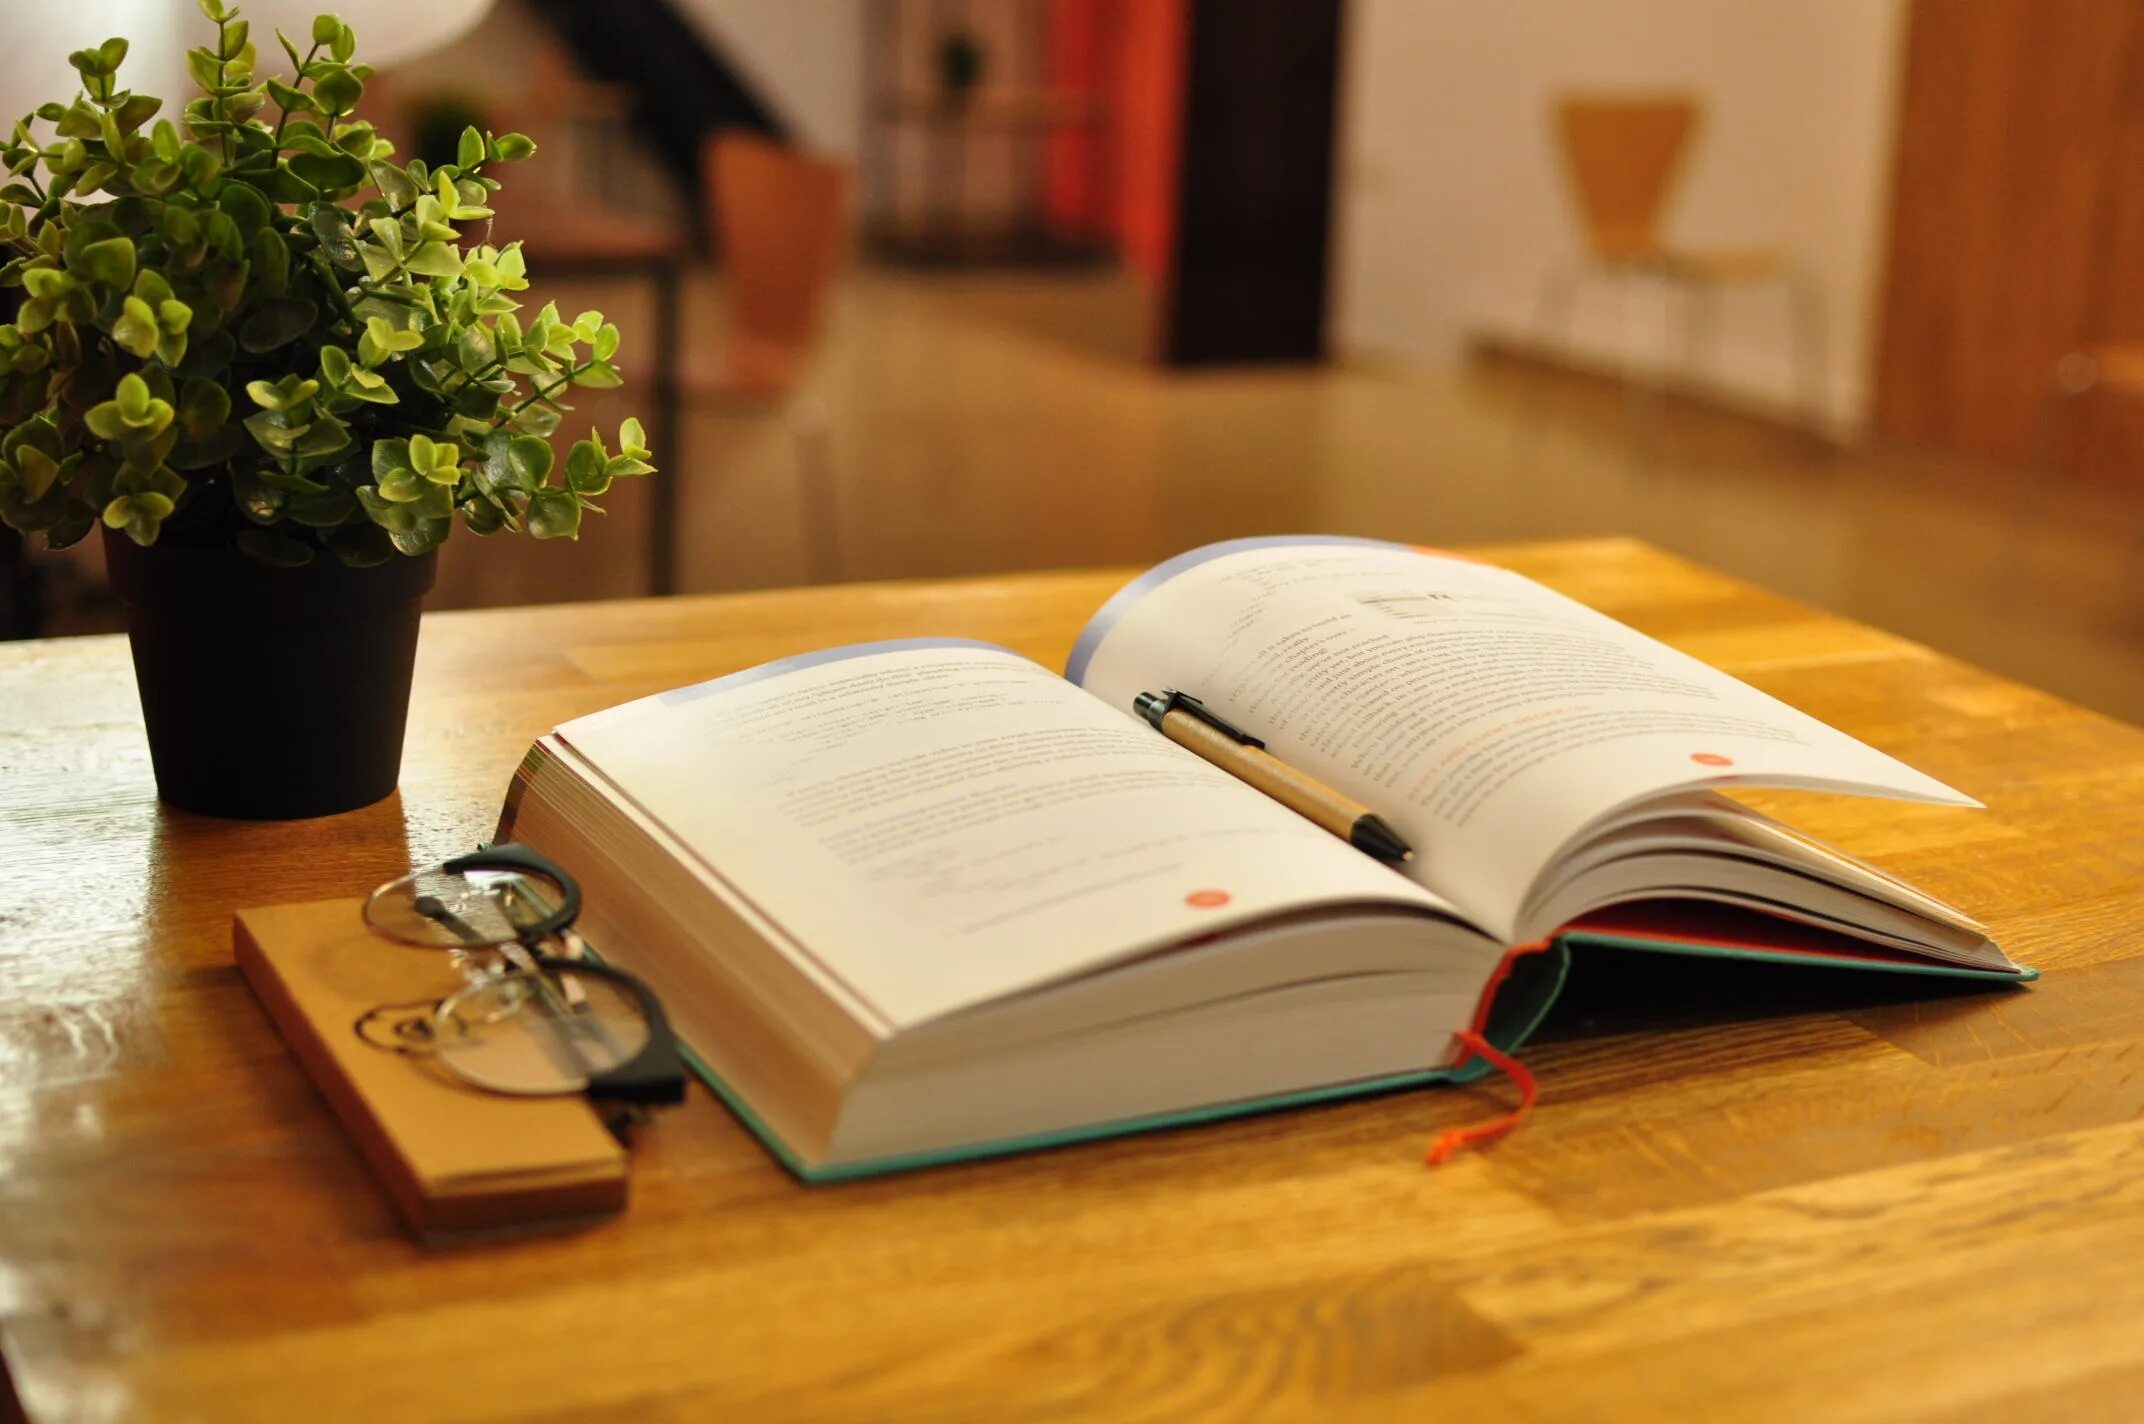 Картинка книга на столе. Стол-книжка. Стол «книга». Книга лежит на столе. Учебники на столе.